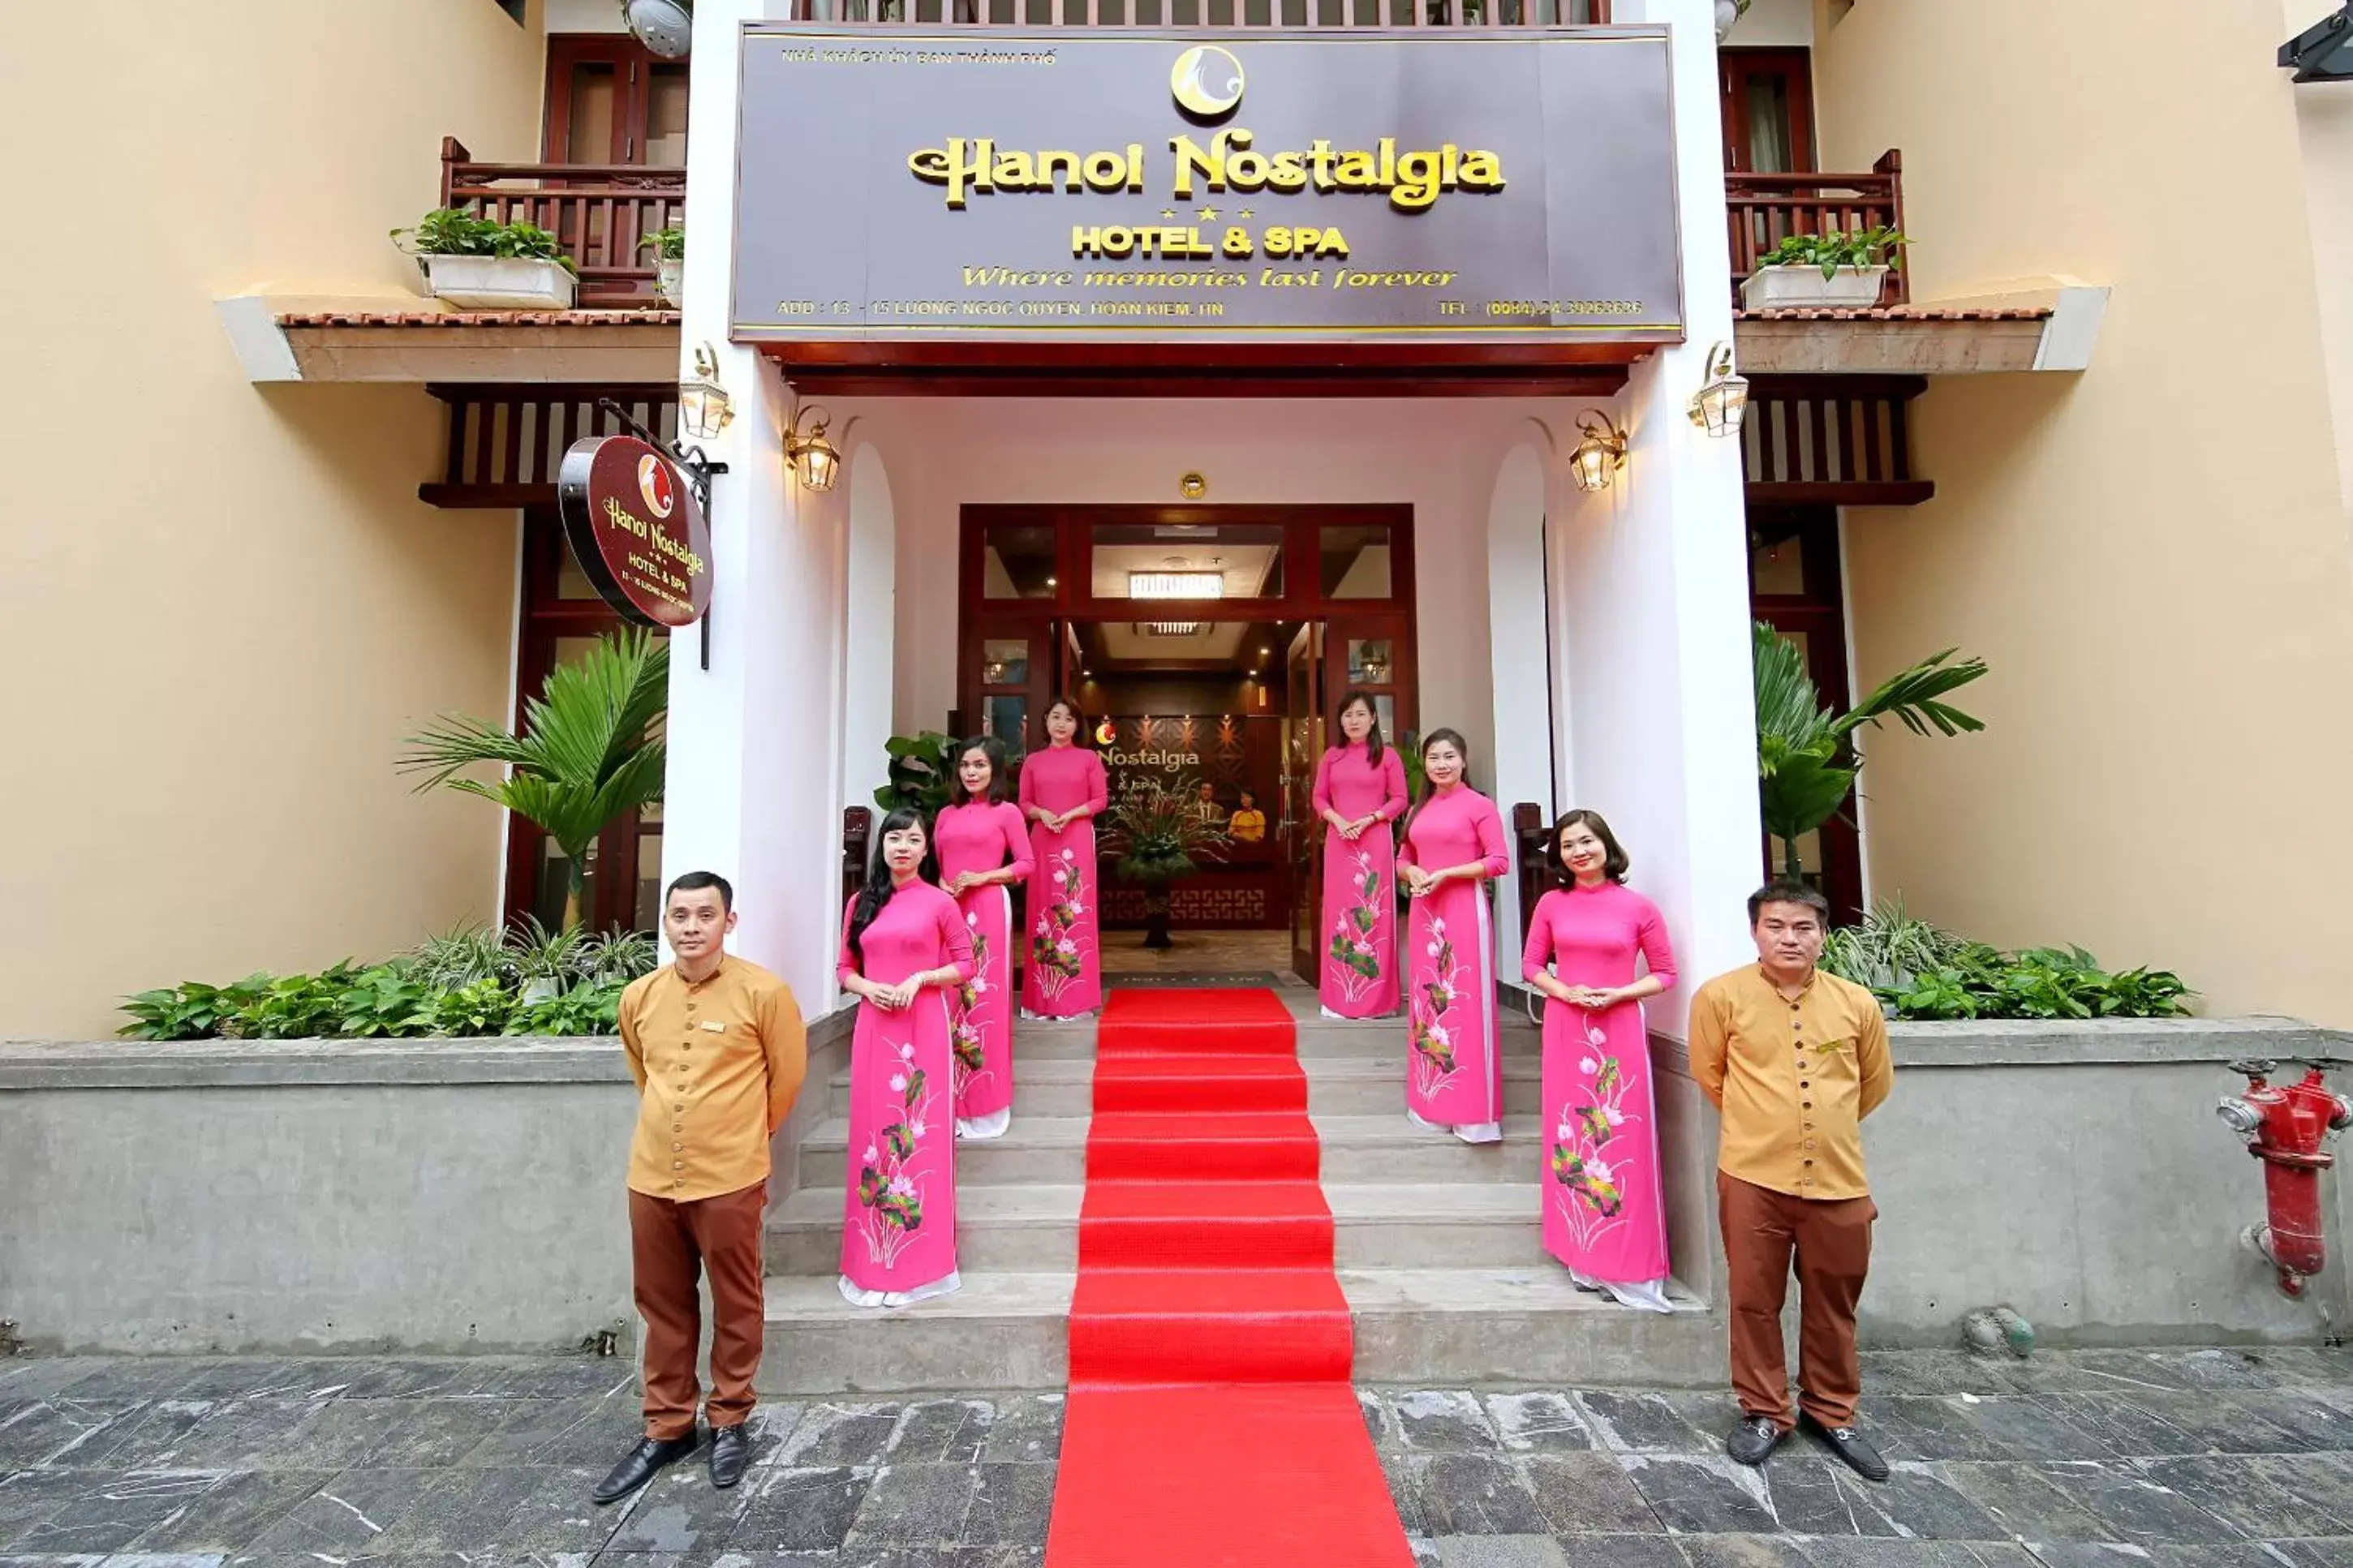 Property building in Hanoi Nostalgia Hotel & Spa